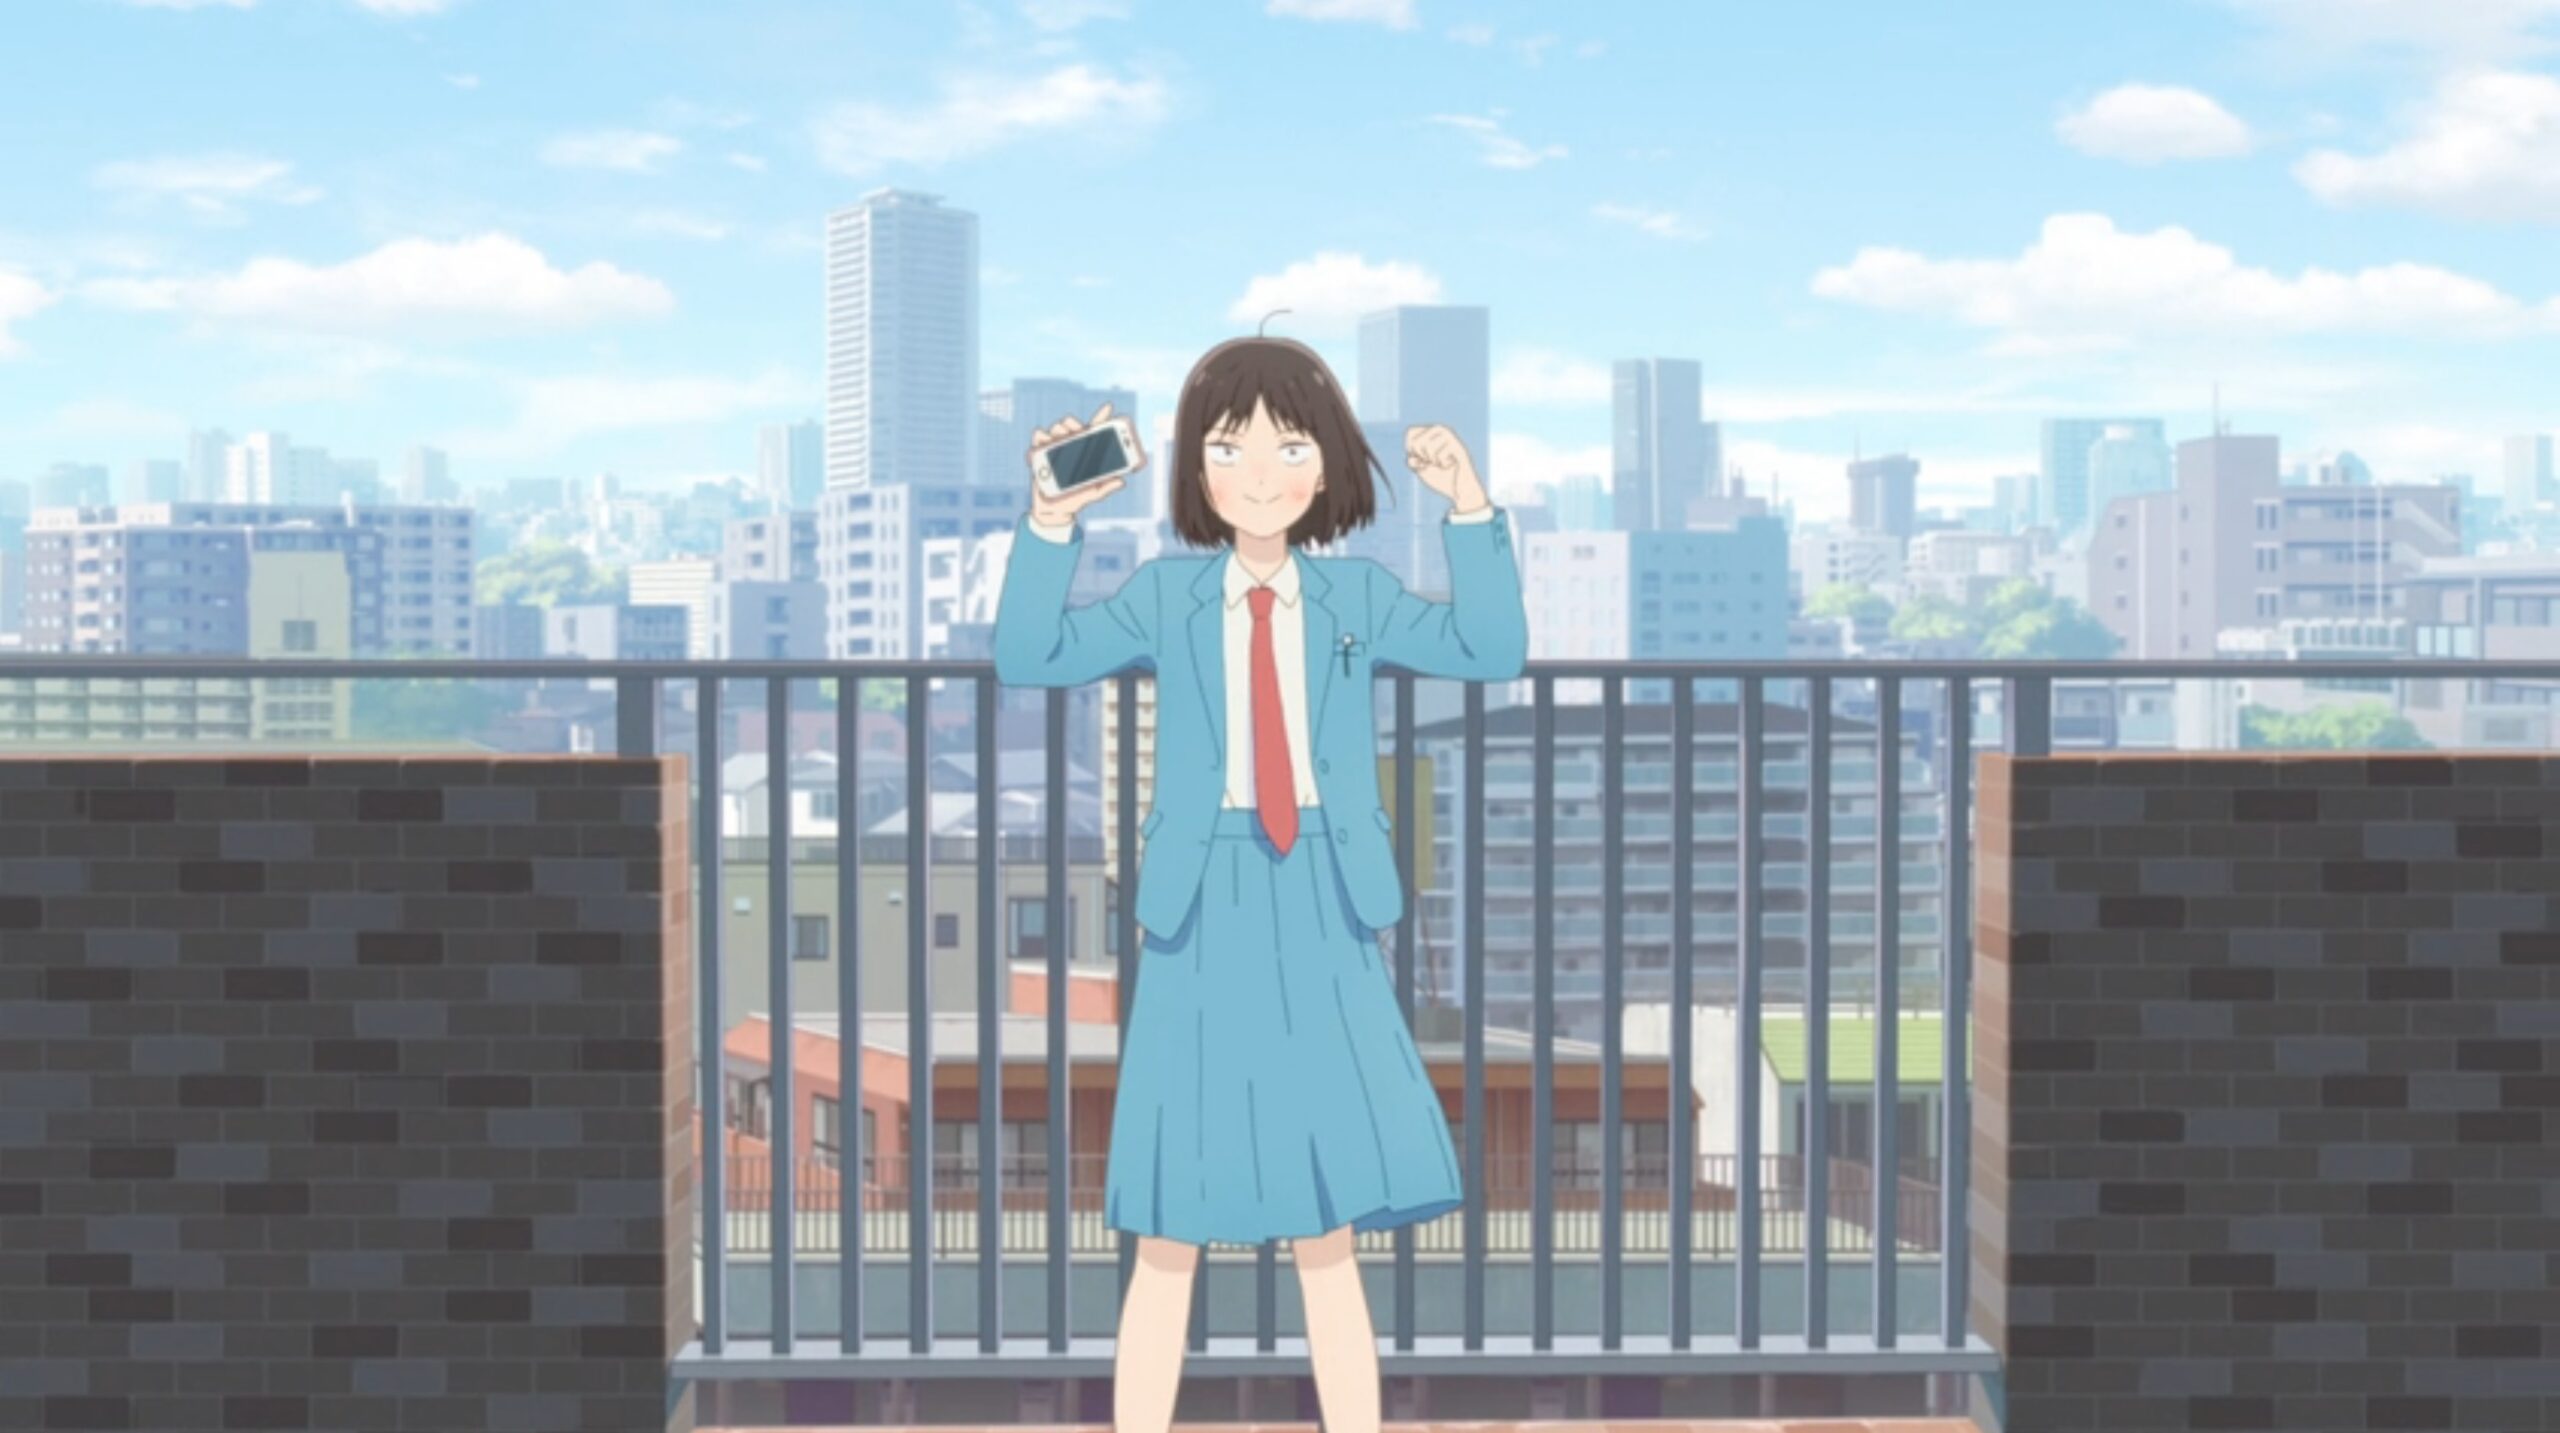 Skip and Loafer – Episode 1 - Anime Feminist